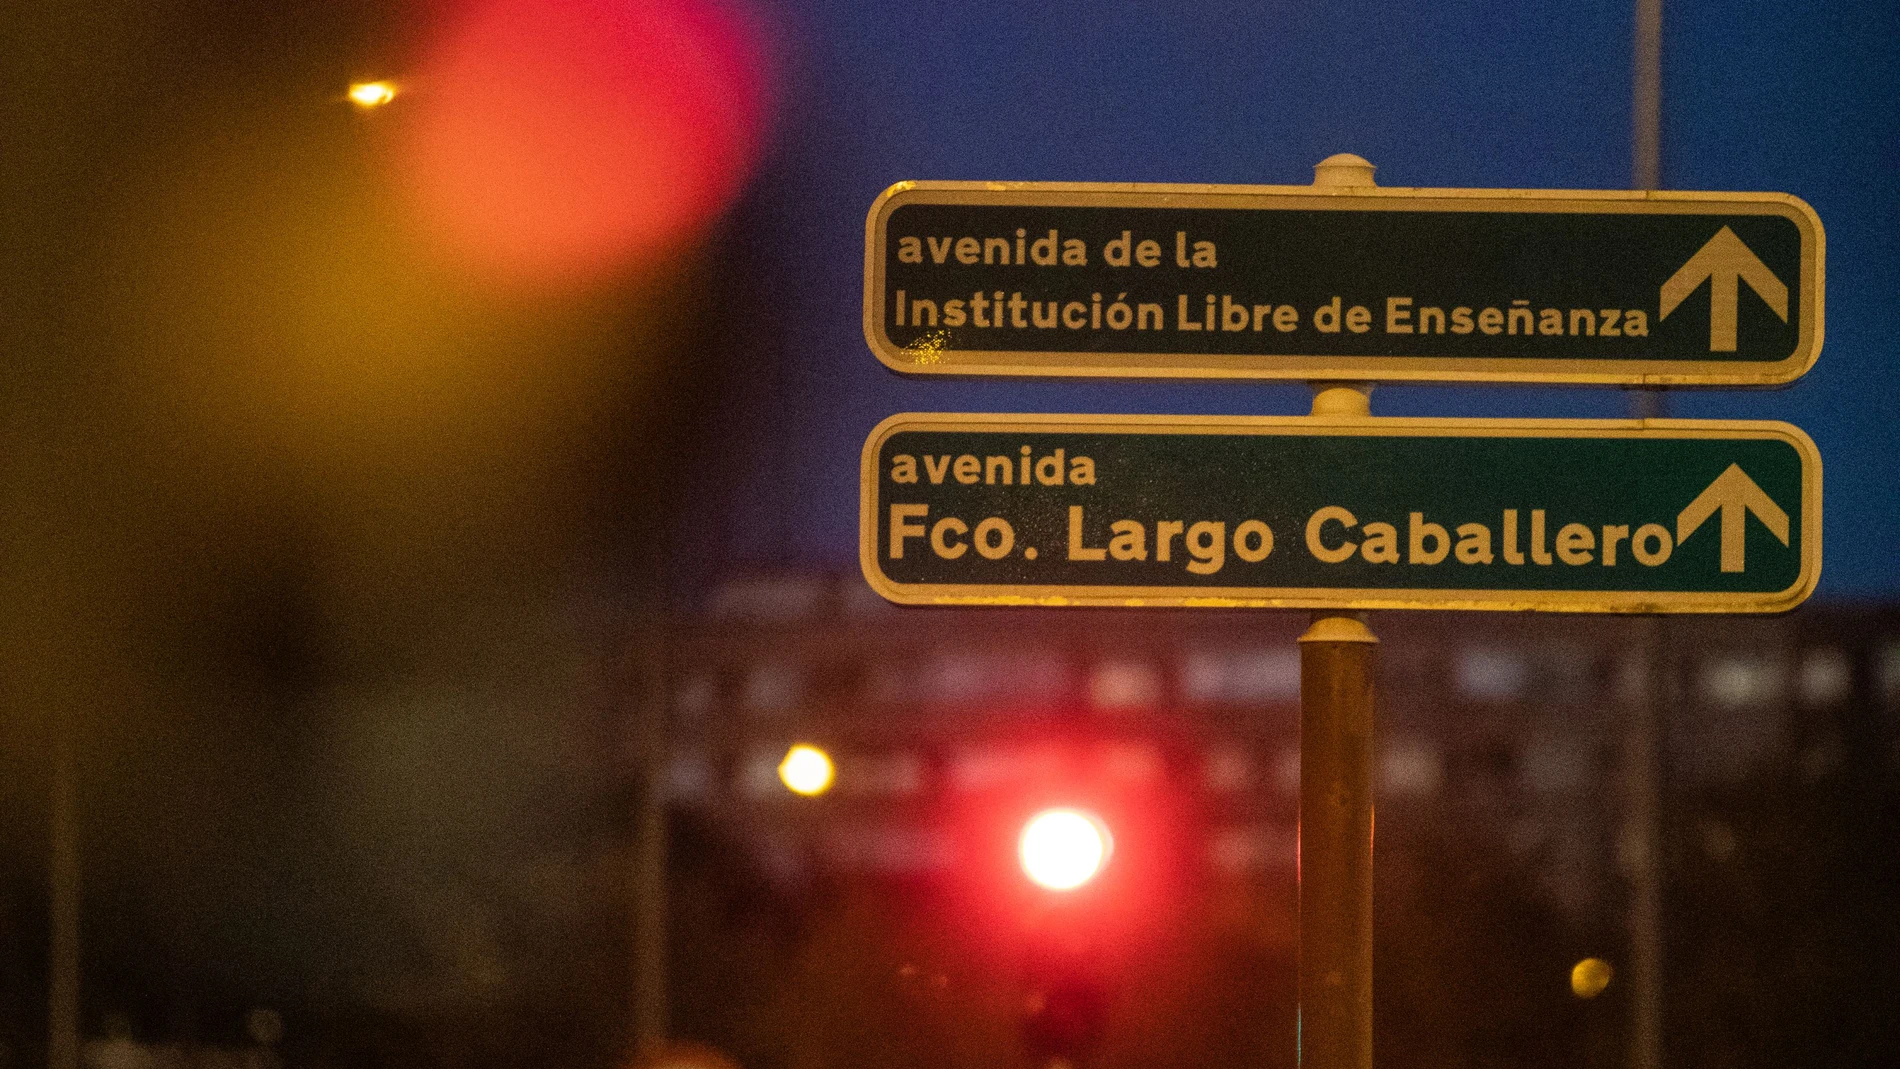 Señal de la avenida Francisco Largo Caballero en Ciudad Lineal